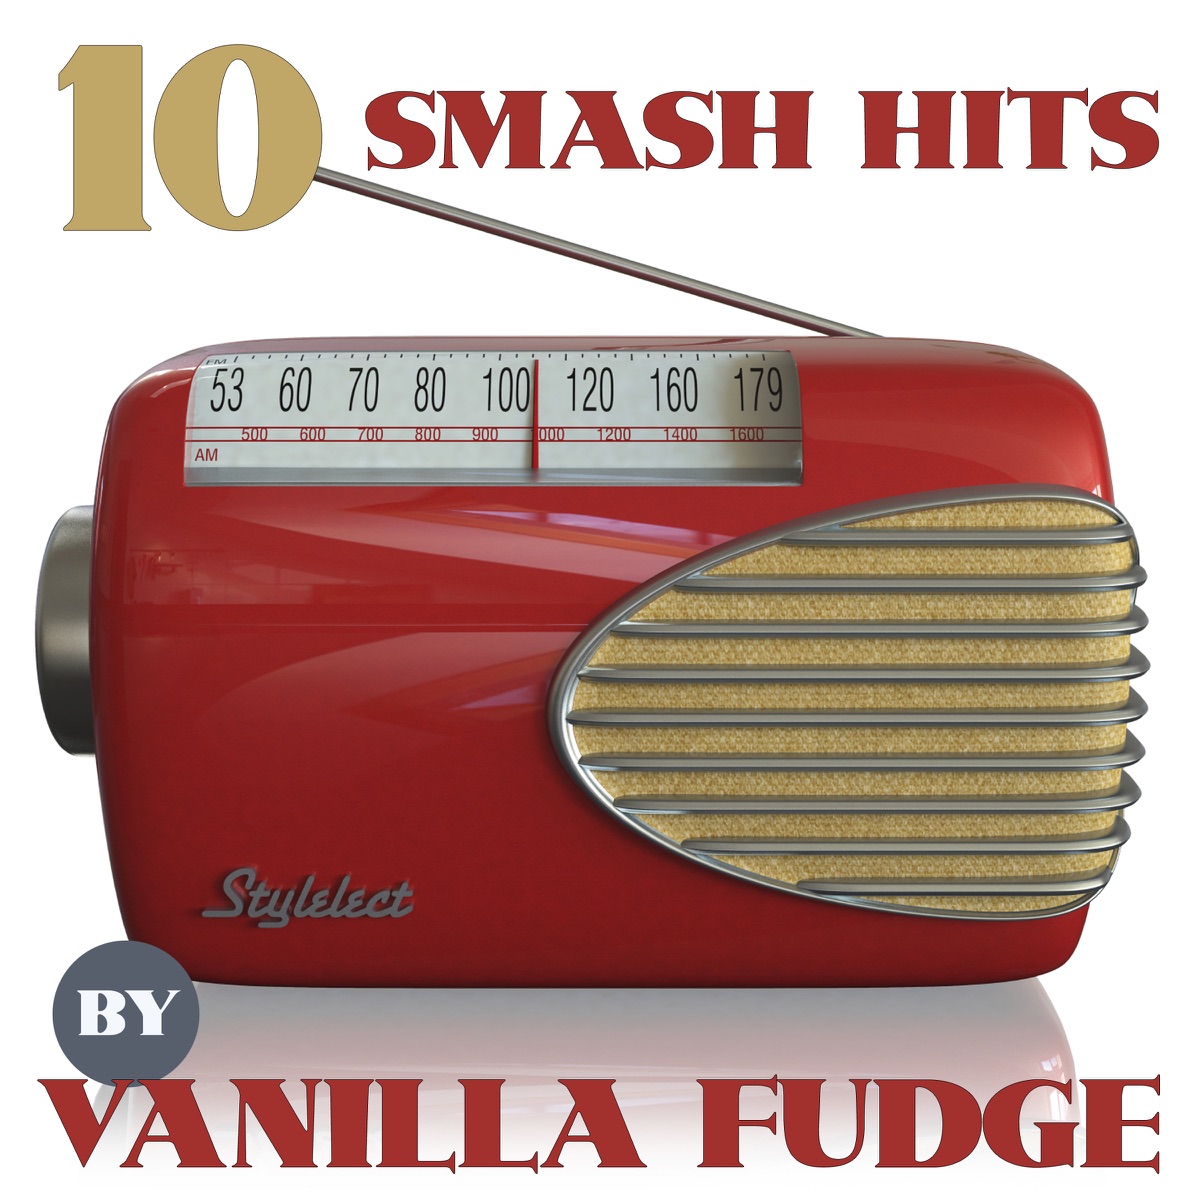 Vanilla Fudge - Album by Vanilla Fudge - Apple Music